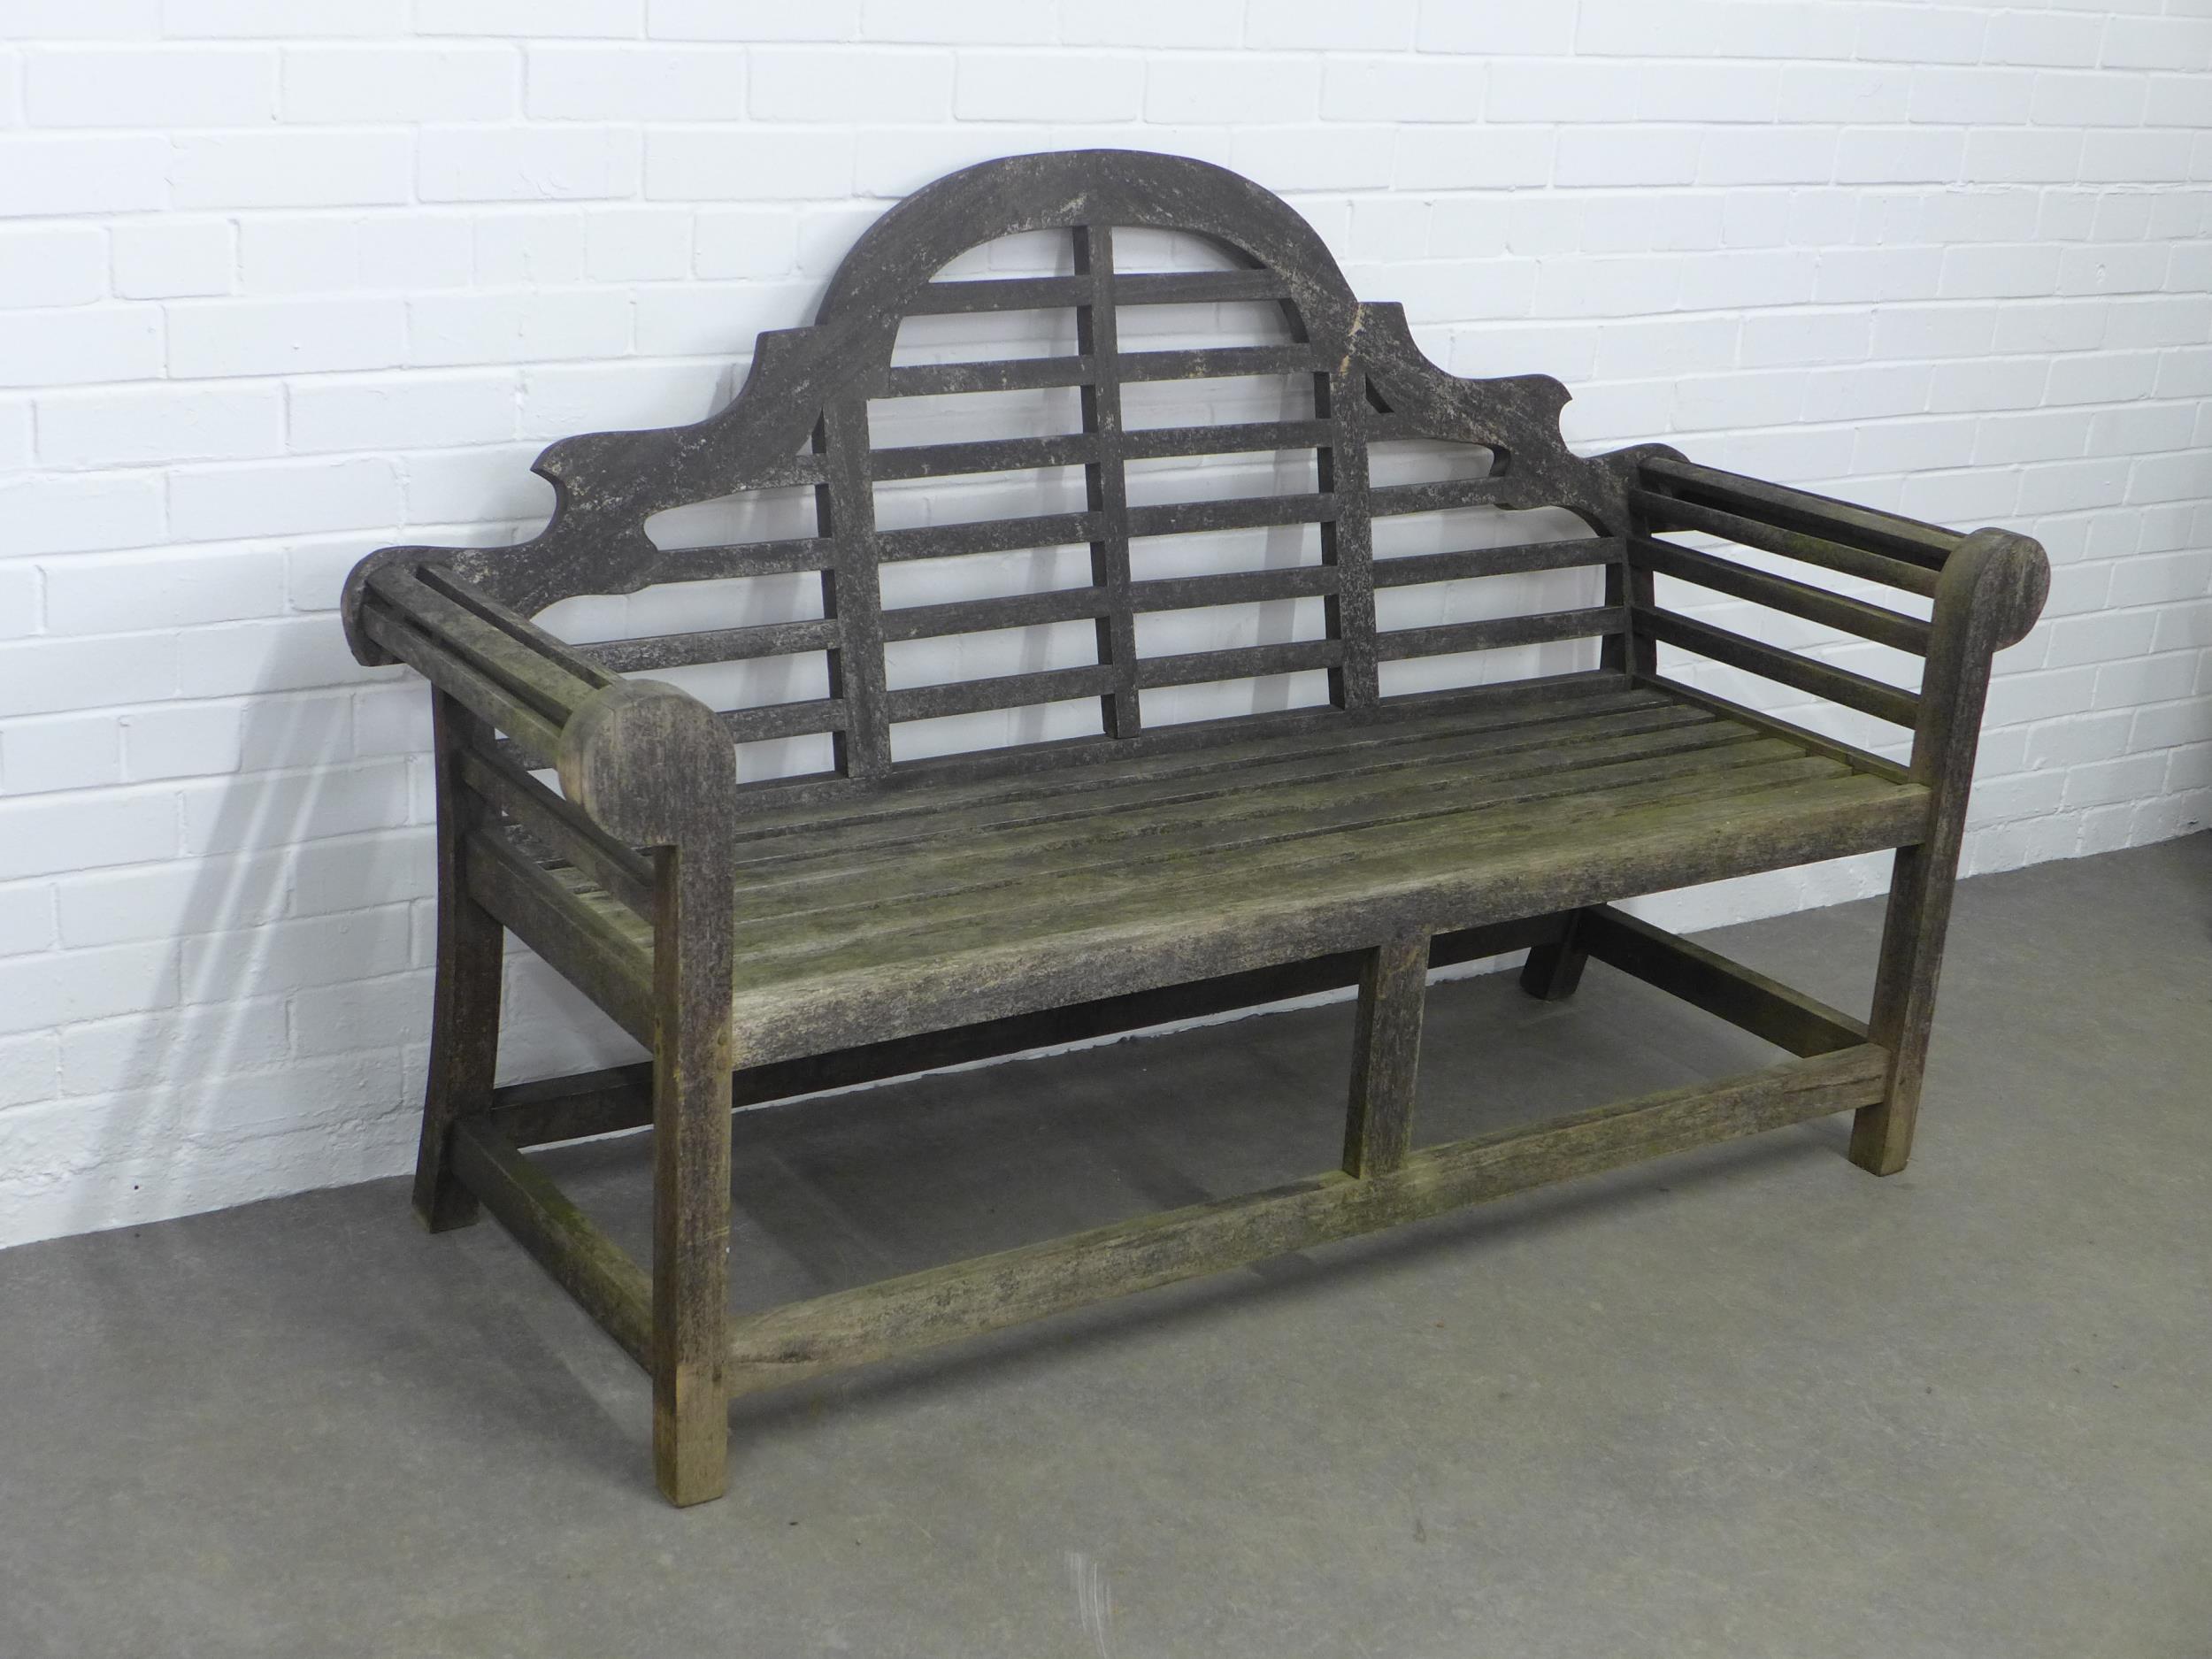 Lutyens style garden bench, 156 x 104cm. - Image 2 of 3